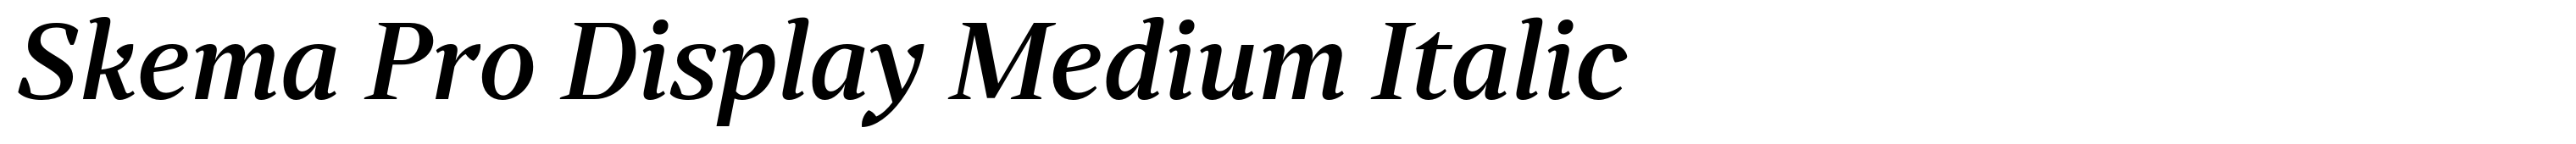 Skema Pro Display Medium Italic